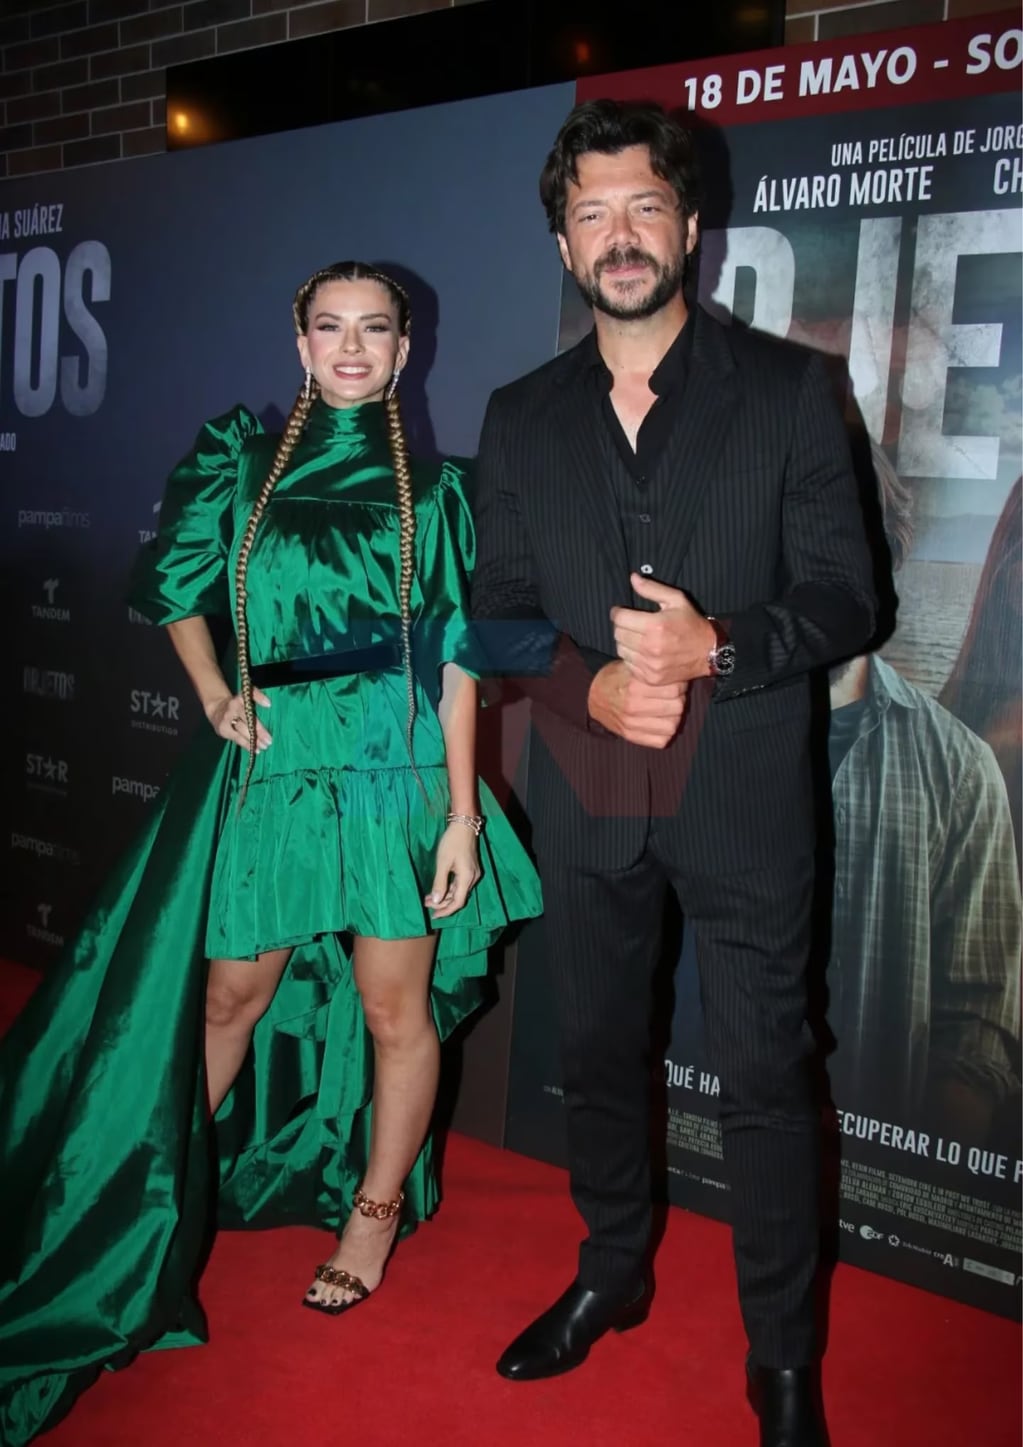 La China Suárez presentó en Buenos Aires la avant premiere de la película española Objetos, la cual protagoniza junto a Álvaro Morte. - TN